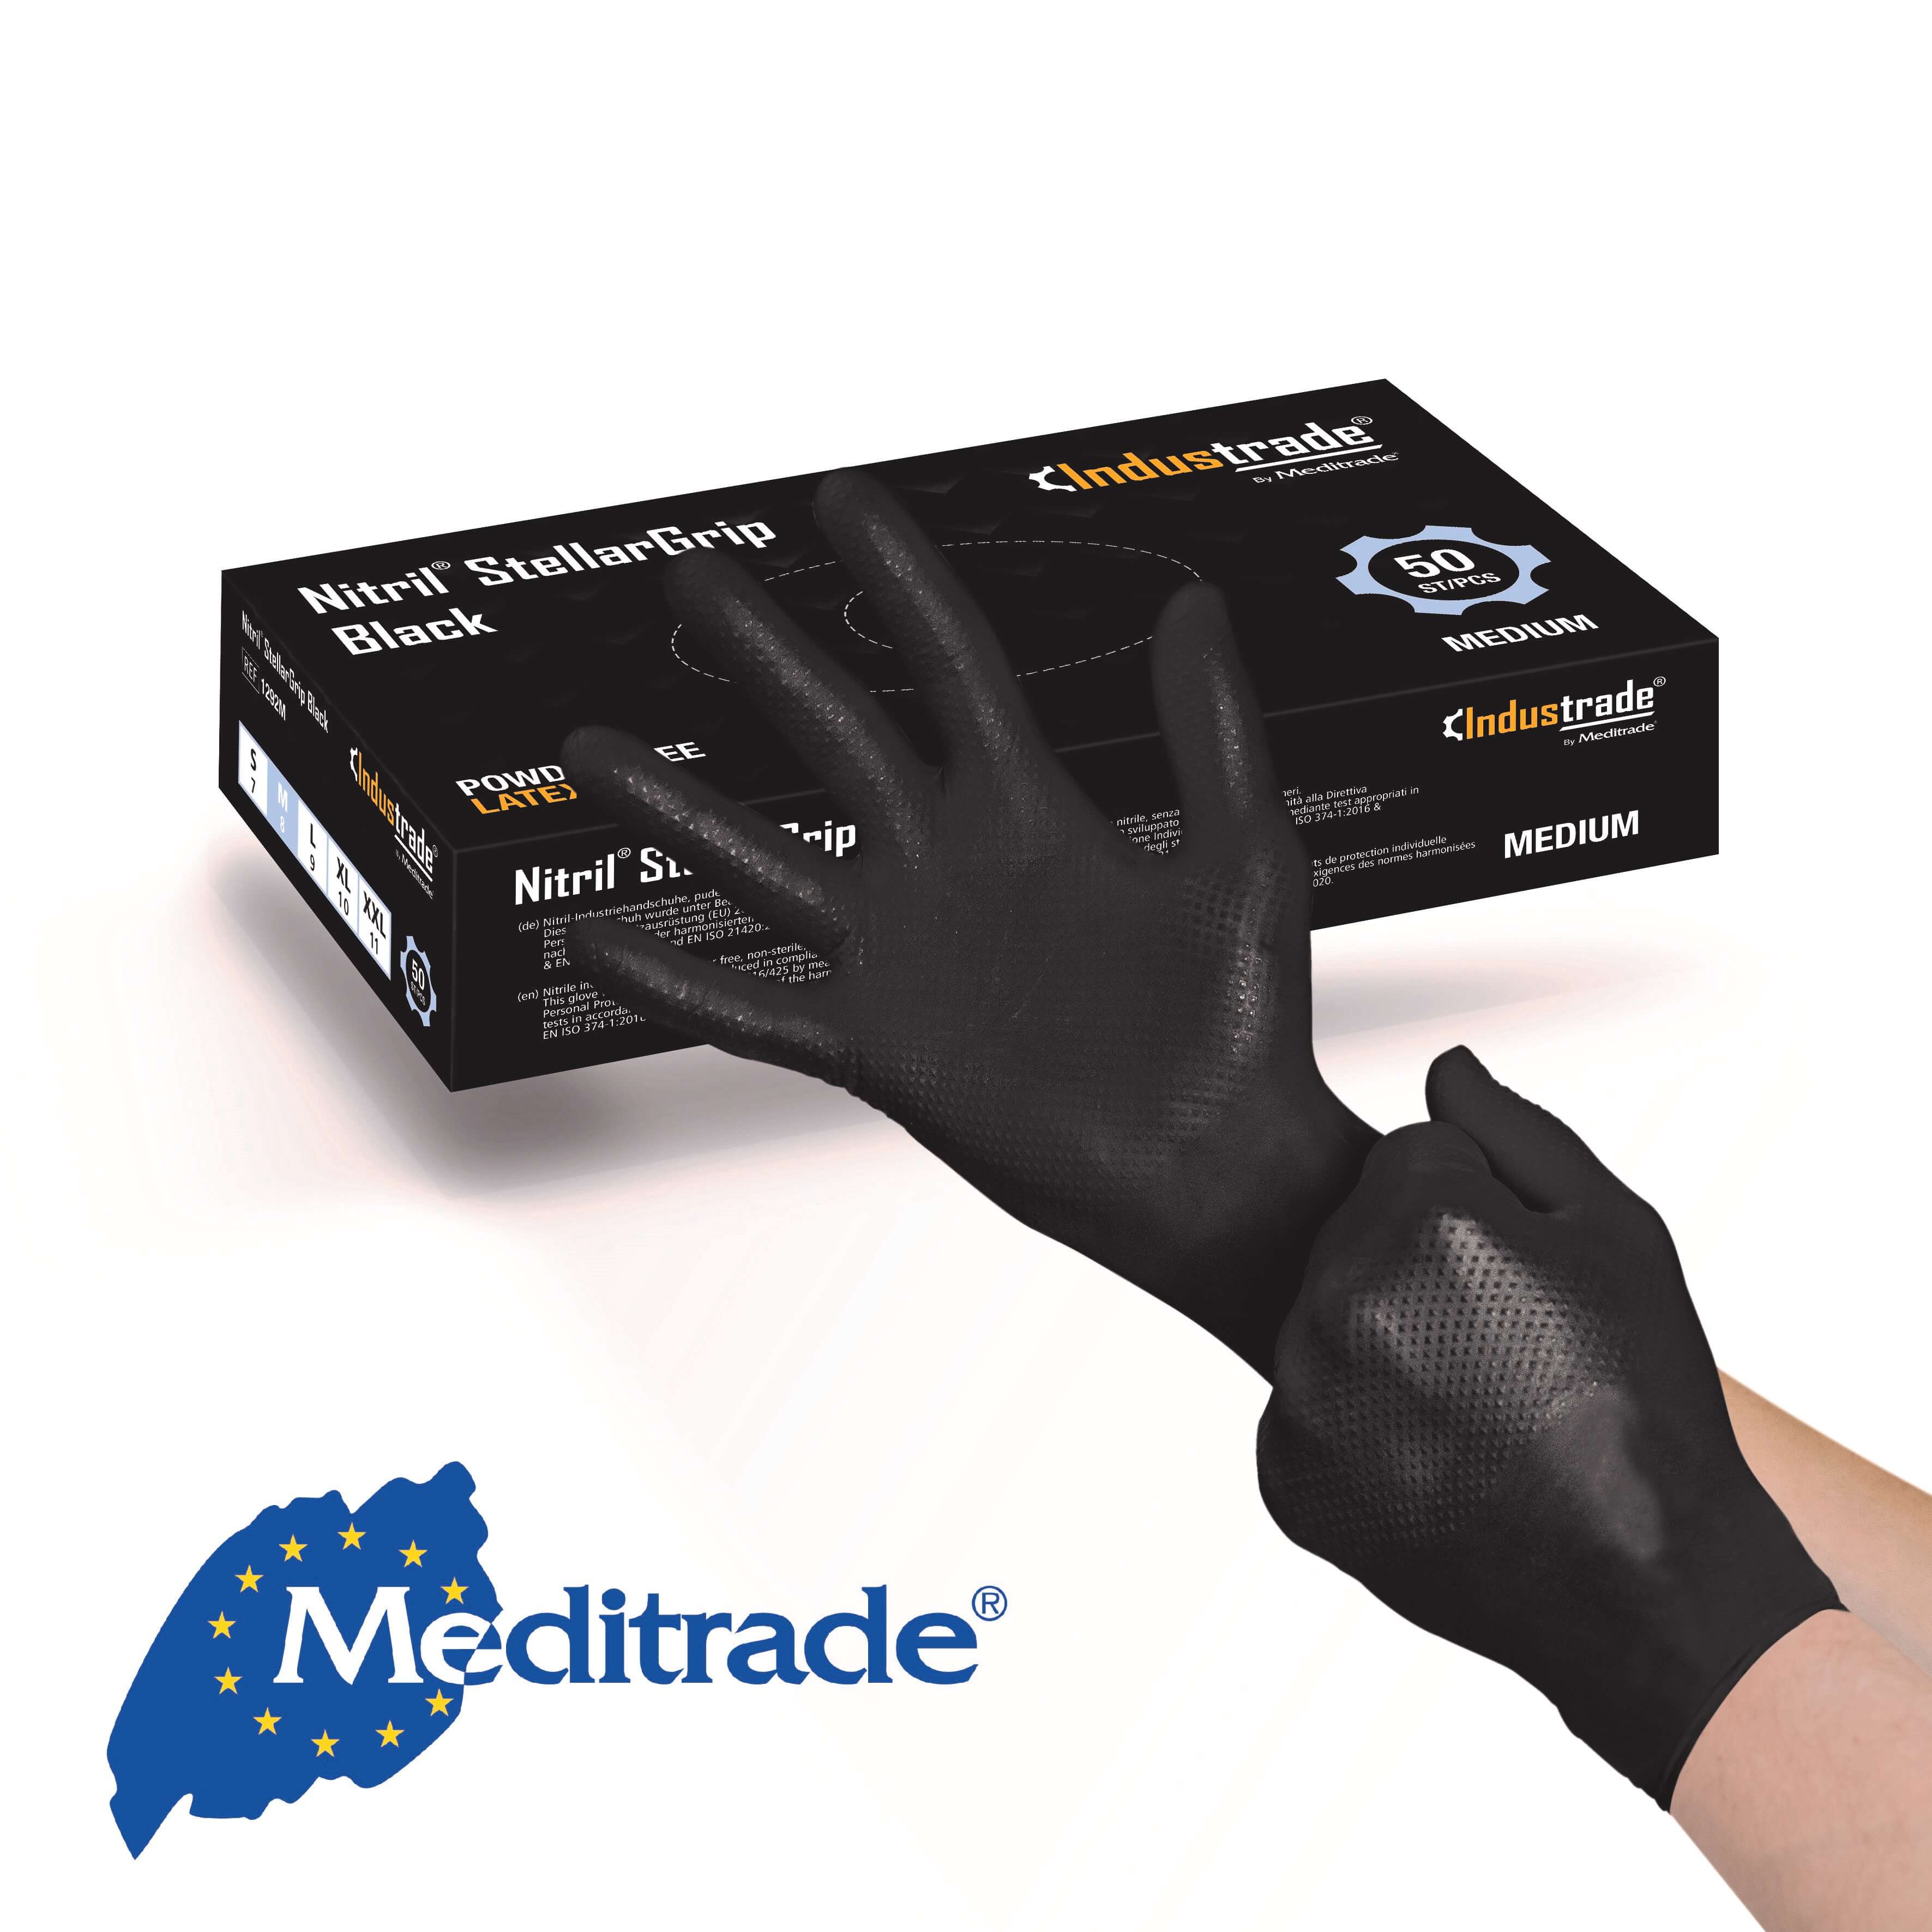 Meditrade StellarGrip Black Nitril Schutzhandschuh mit Diamantstruktur